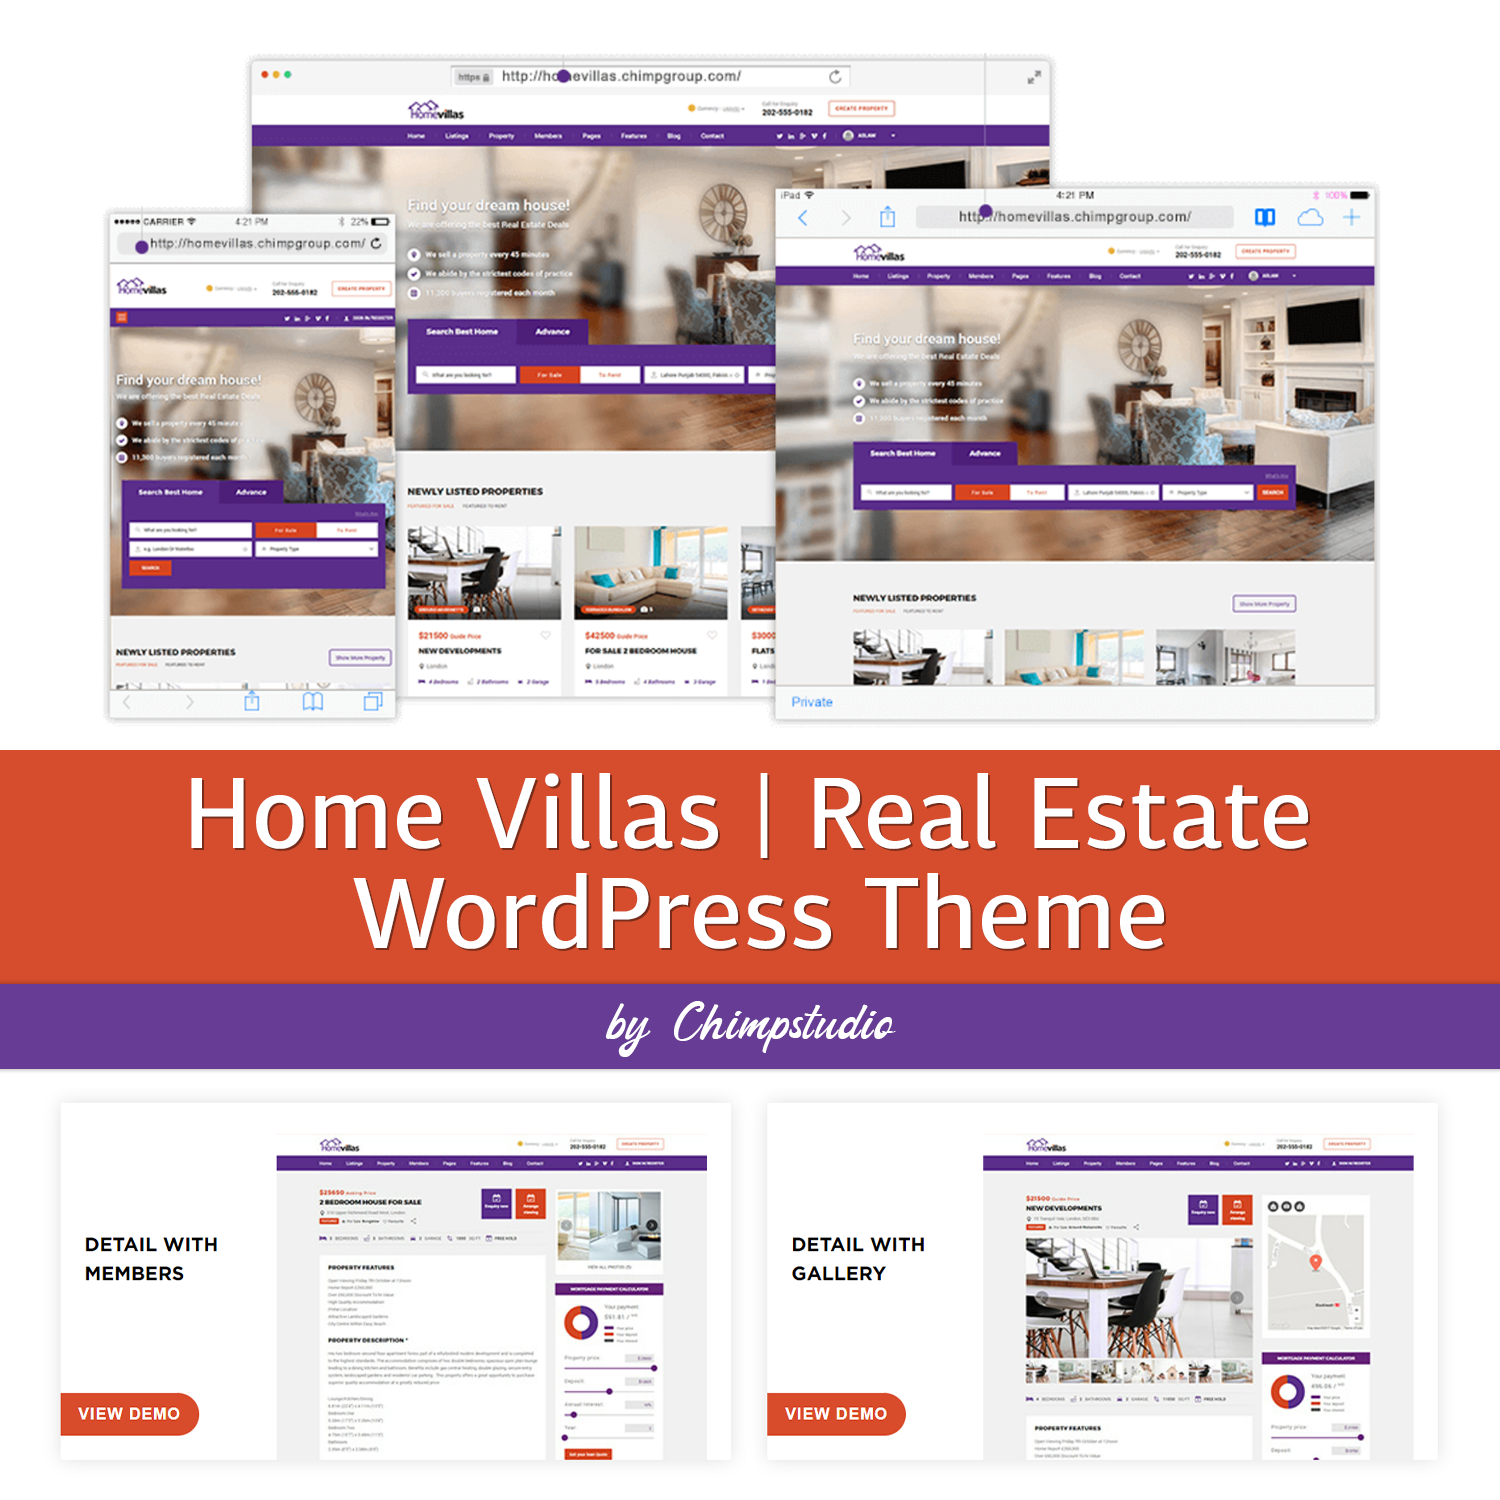 Preview home villas real estate wordpress theme.